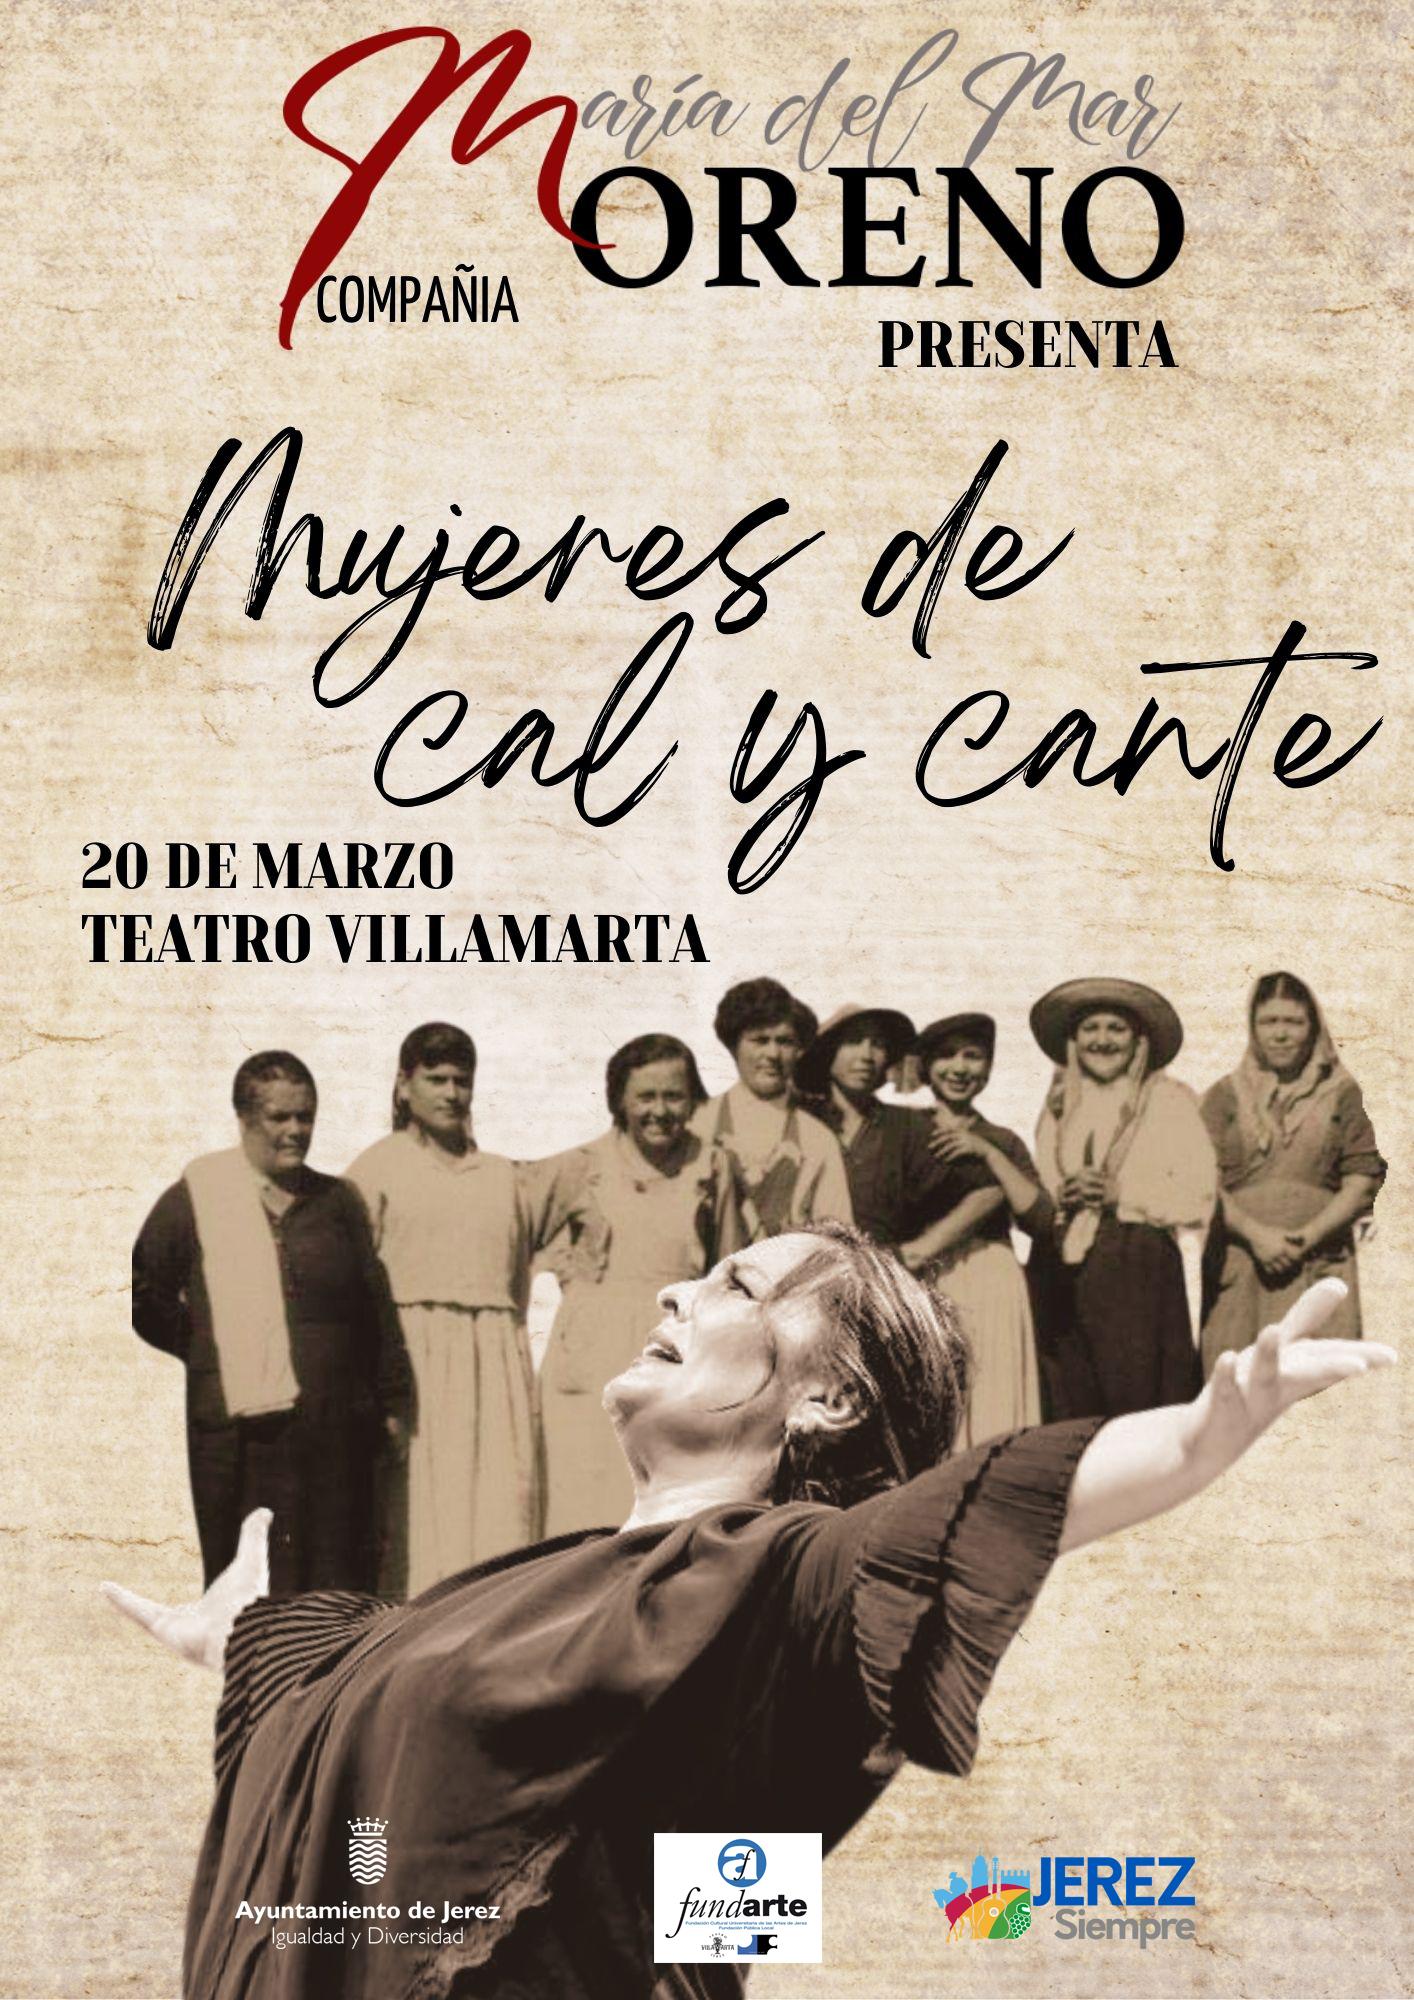 Las invitaciones para el espectáculo de María del Mar Moreno 'Mujeres de cal y cante' en Villamarta pueden solicitarse hasta el 15 de marzo